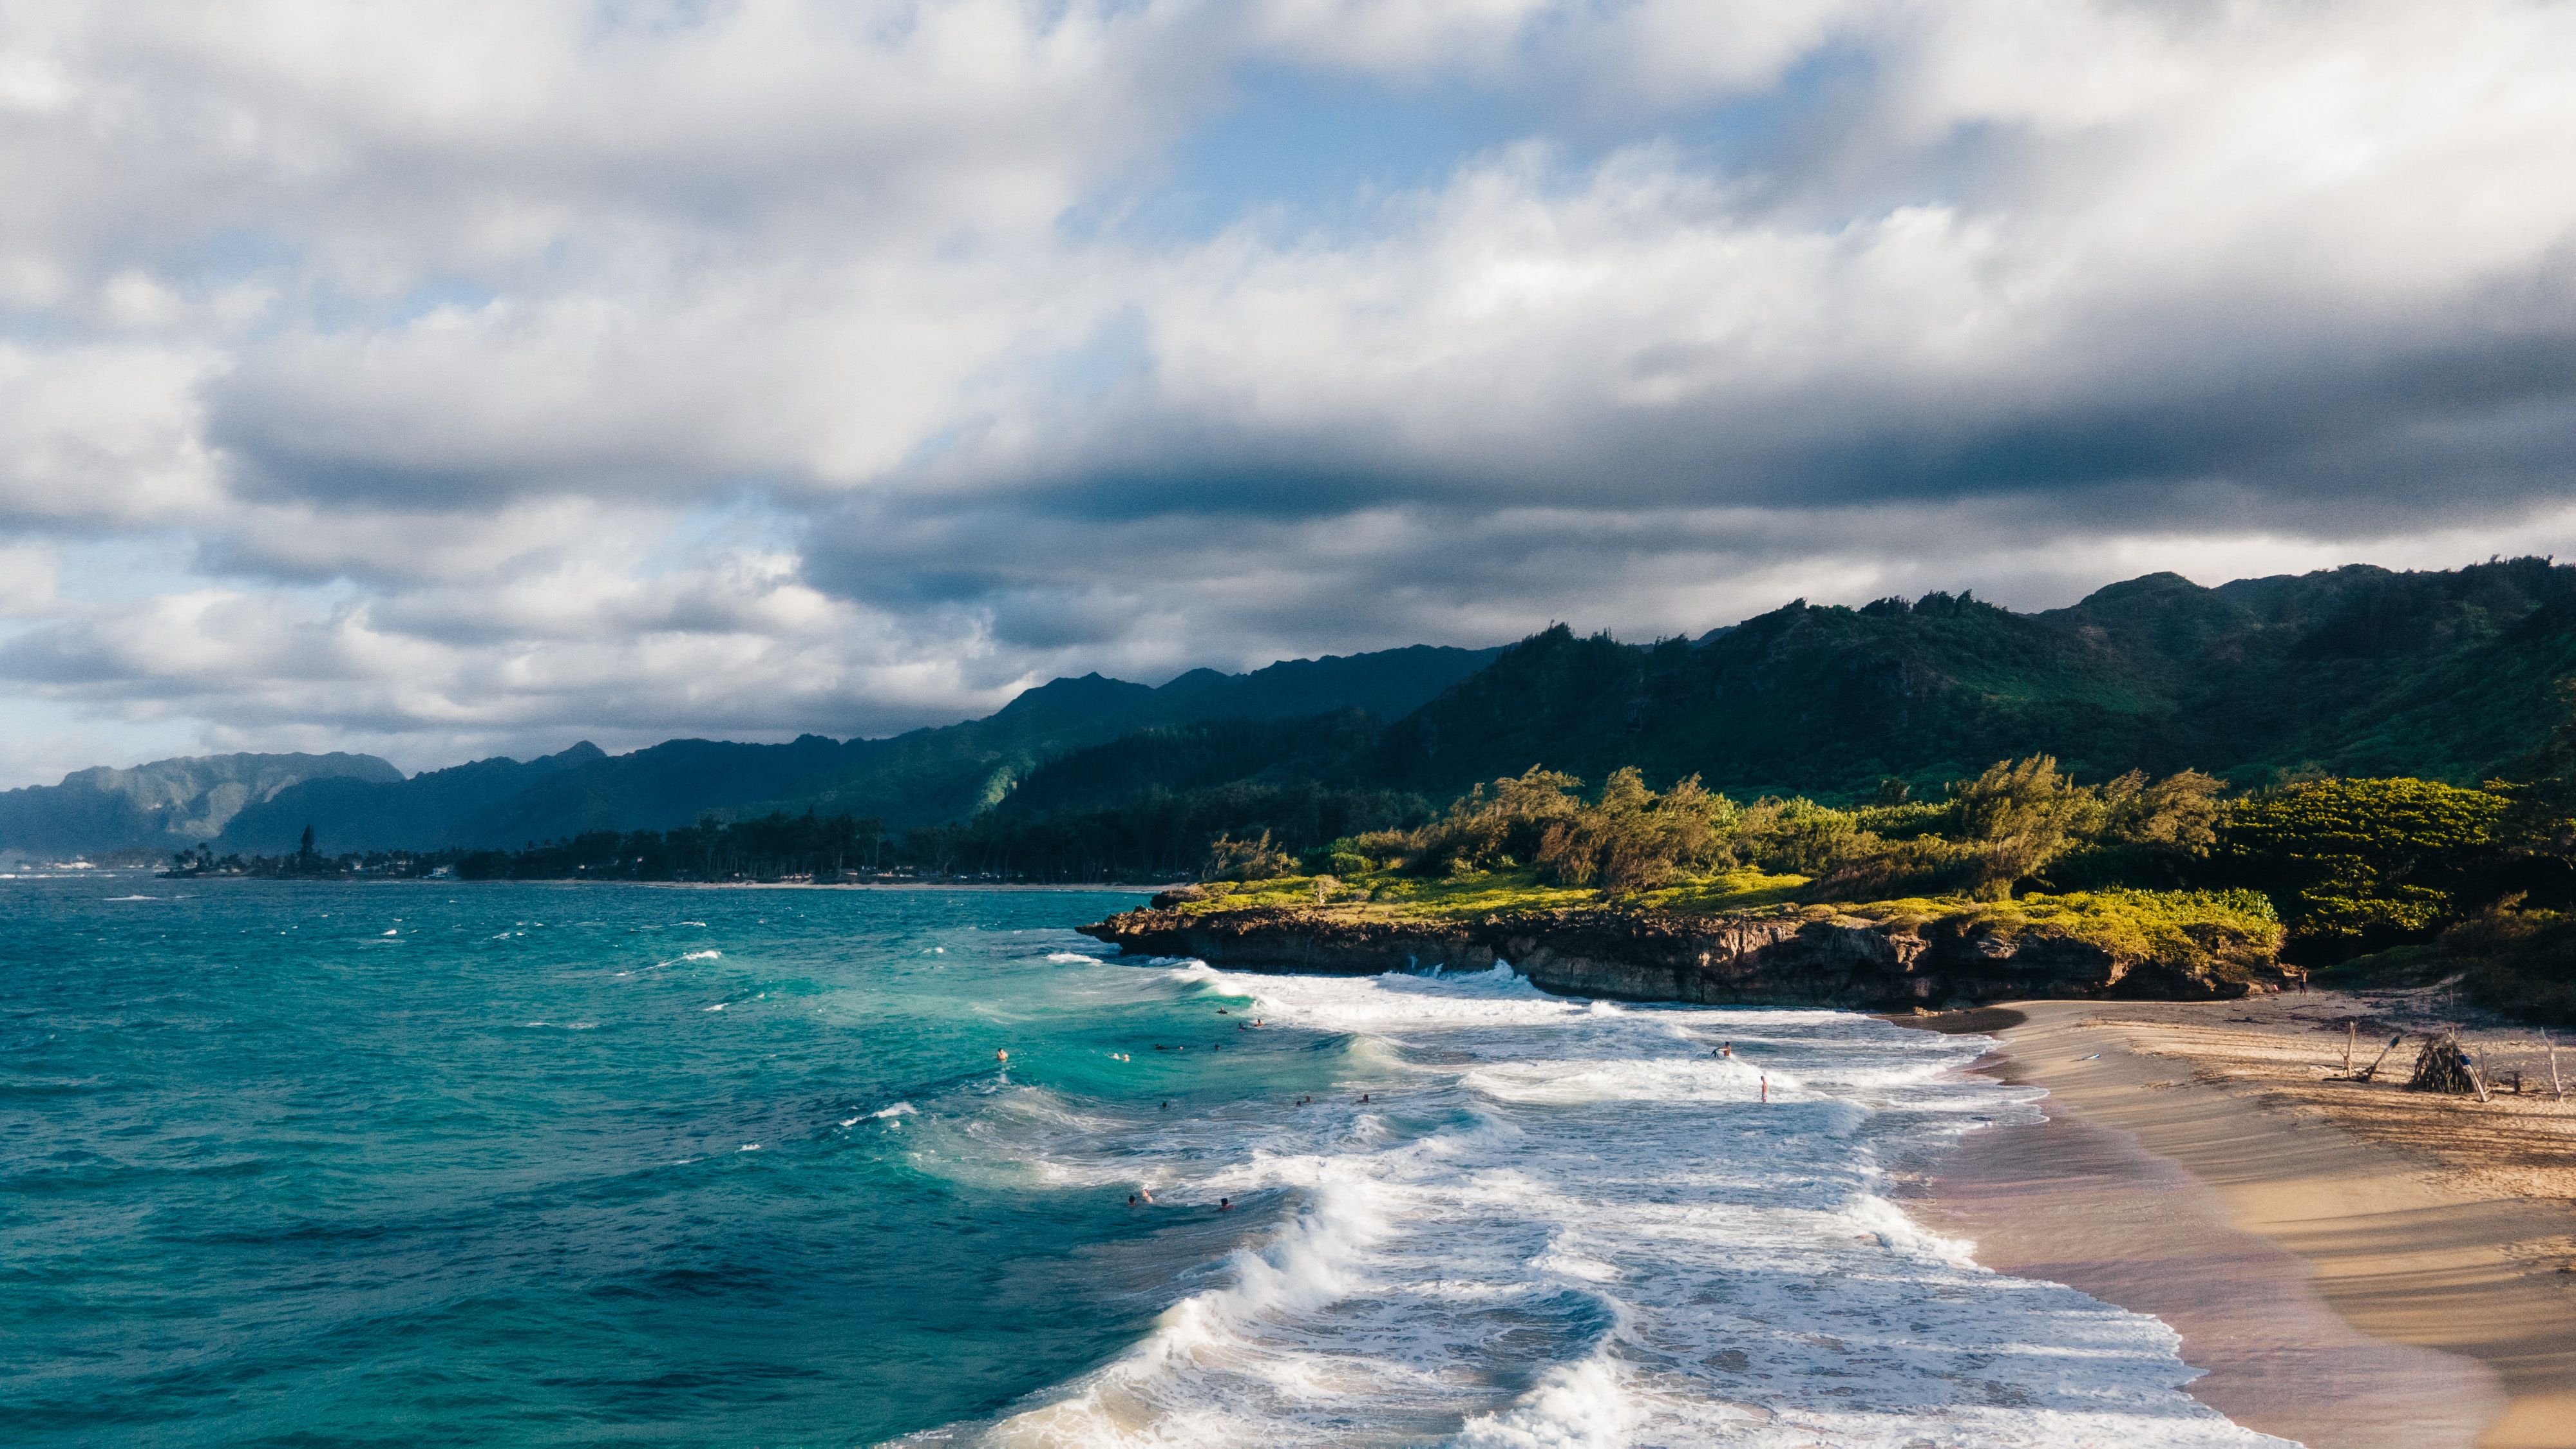 photo of land and sea on Oahu, Hawaii. Mahalo i ka ʻāina is how to respect the island